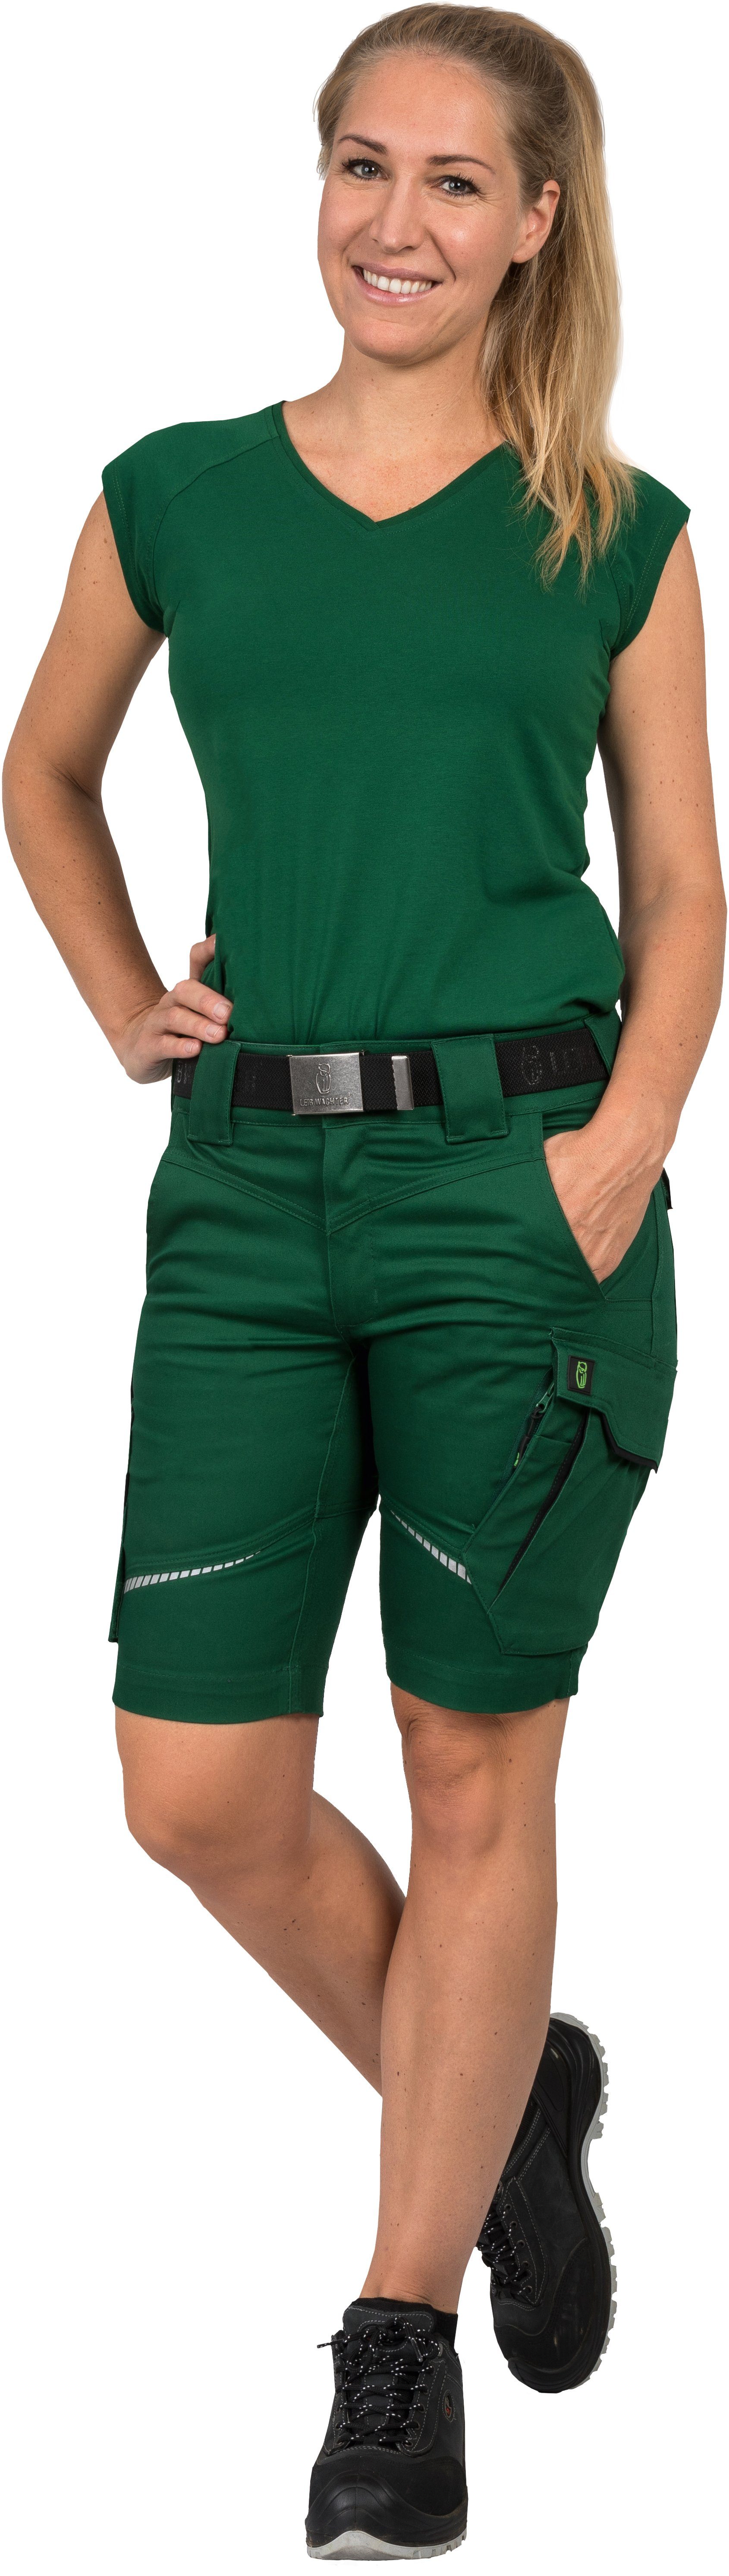 Arbeitsshorts Flex-Line grün/schwarz Leibwächter Damen Arbeitsshorts